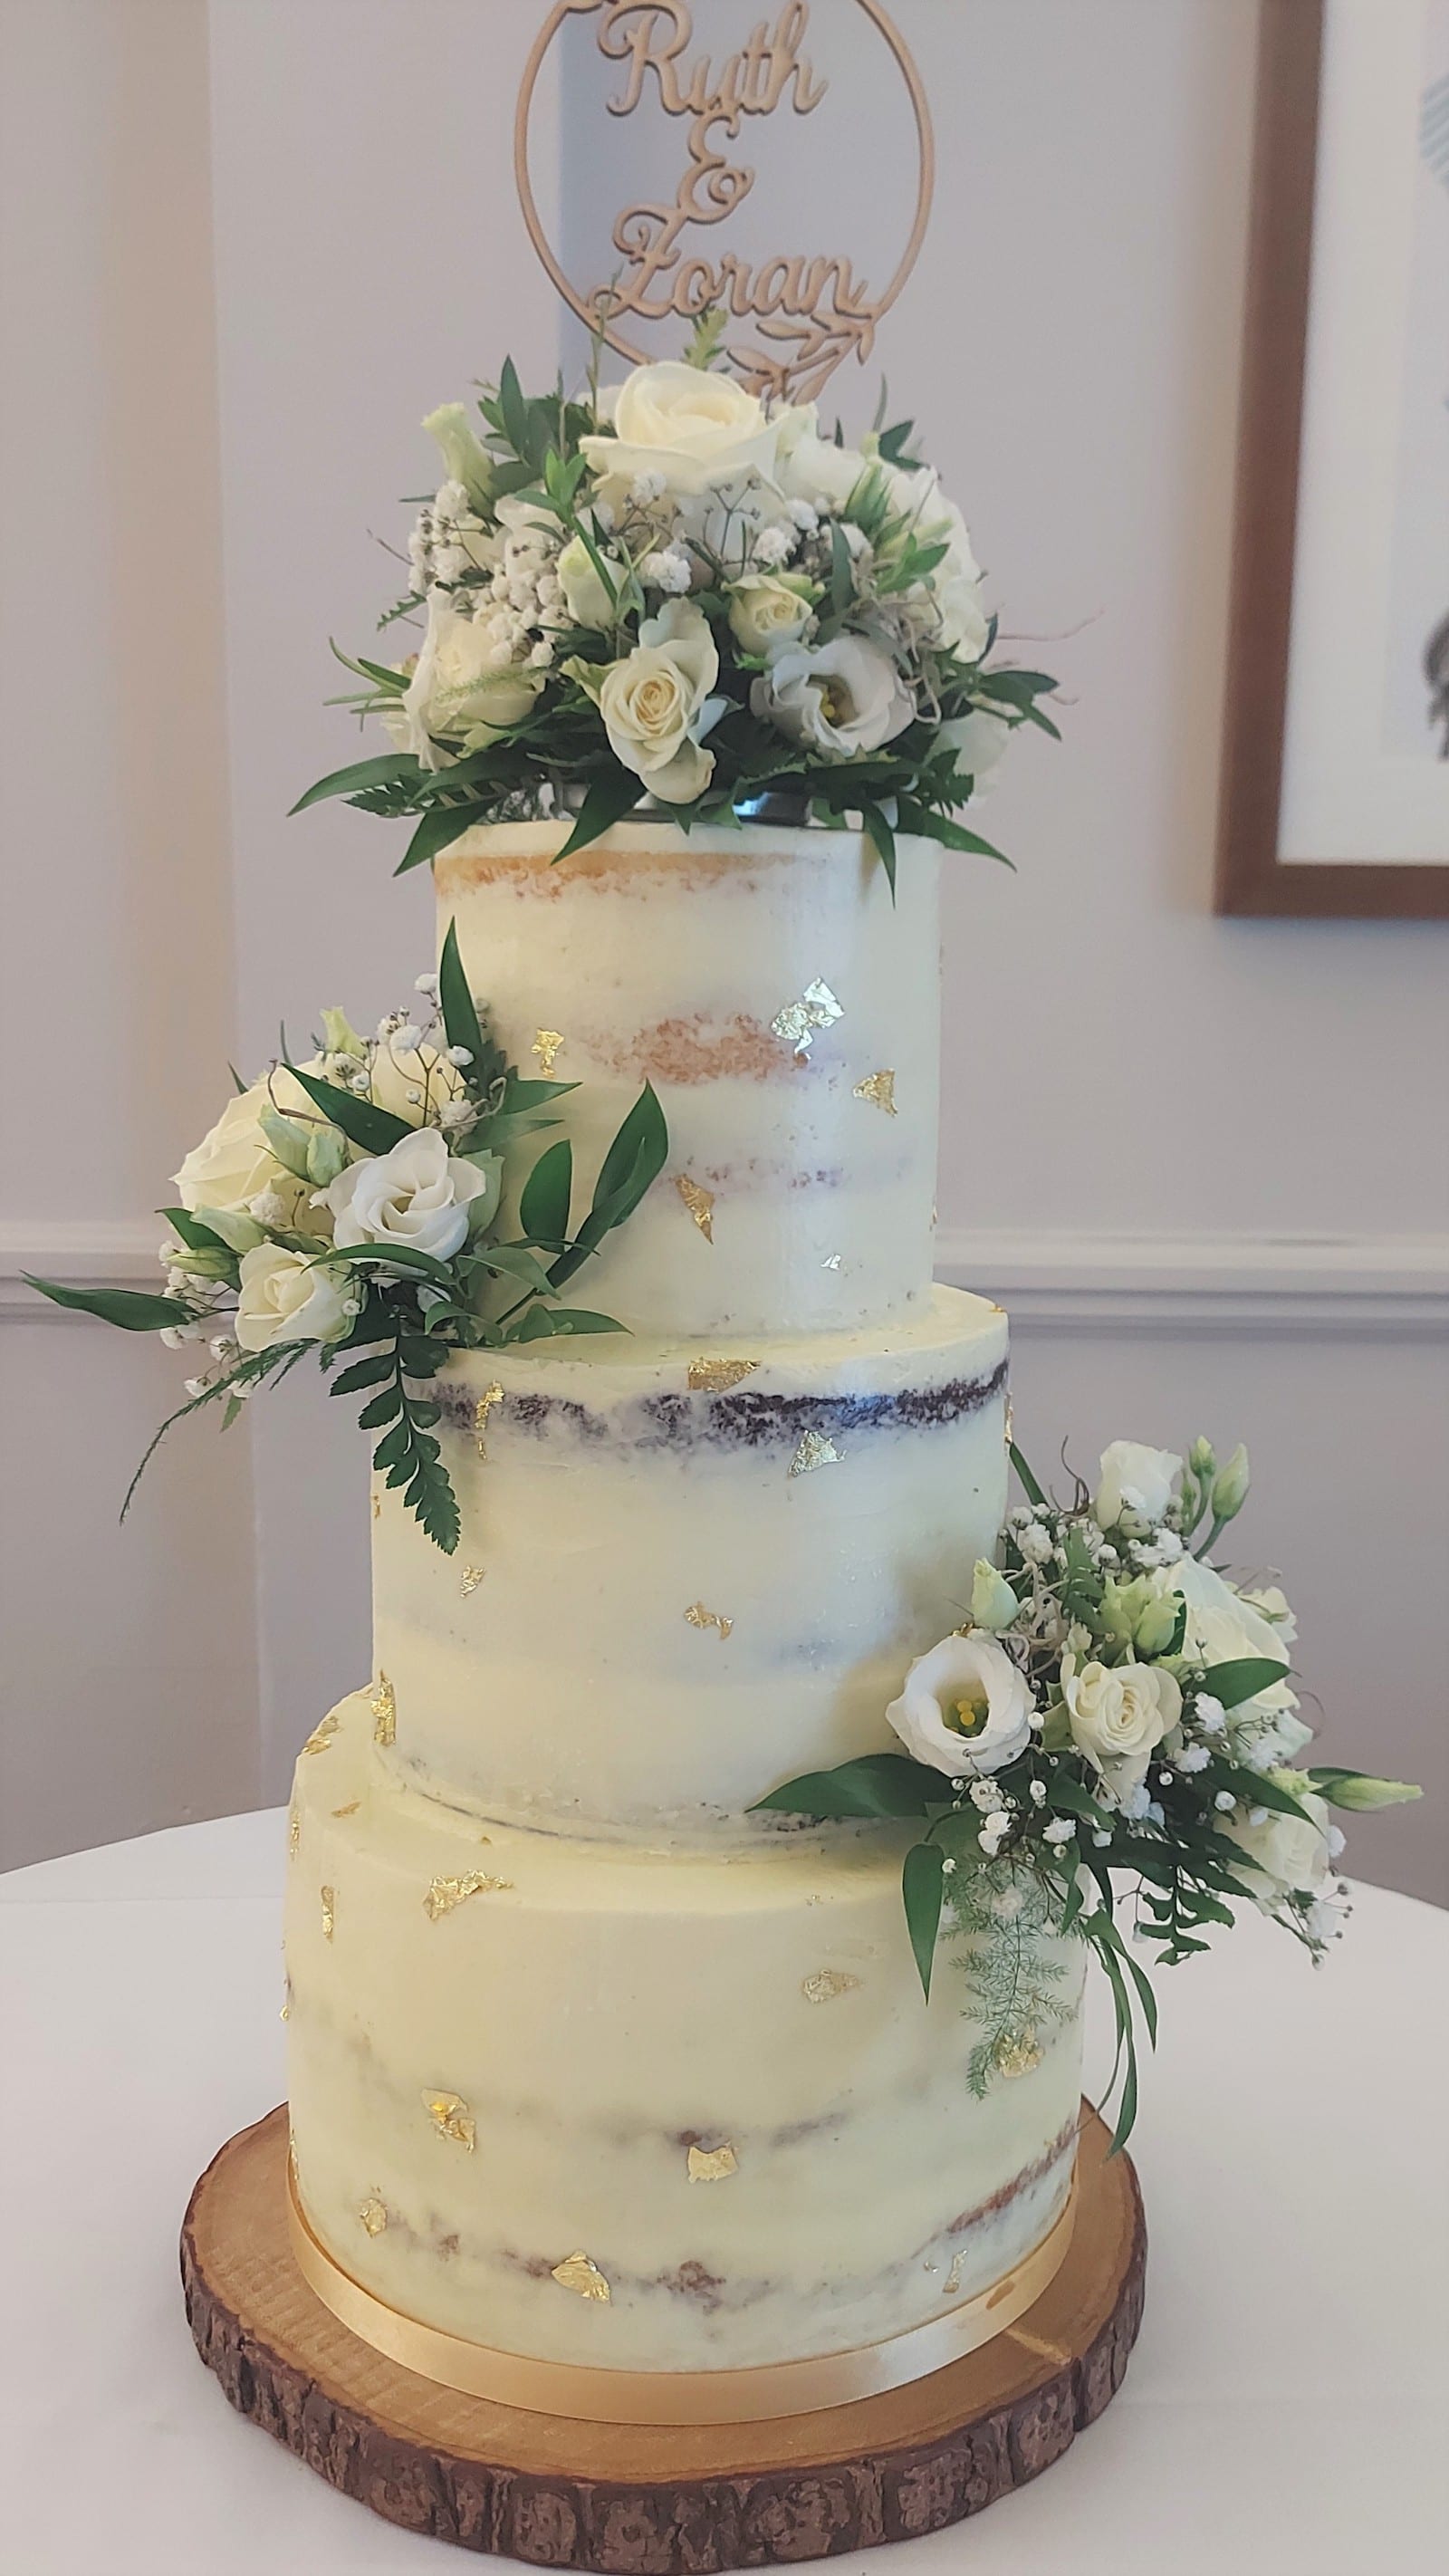 My Wedding Cakes Portfolio - Miri's Cakes and Bakes